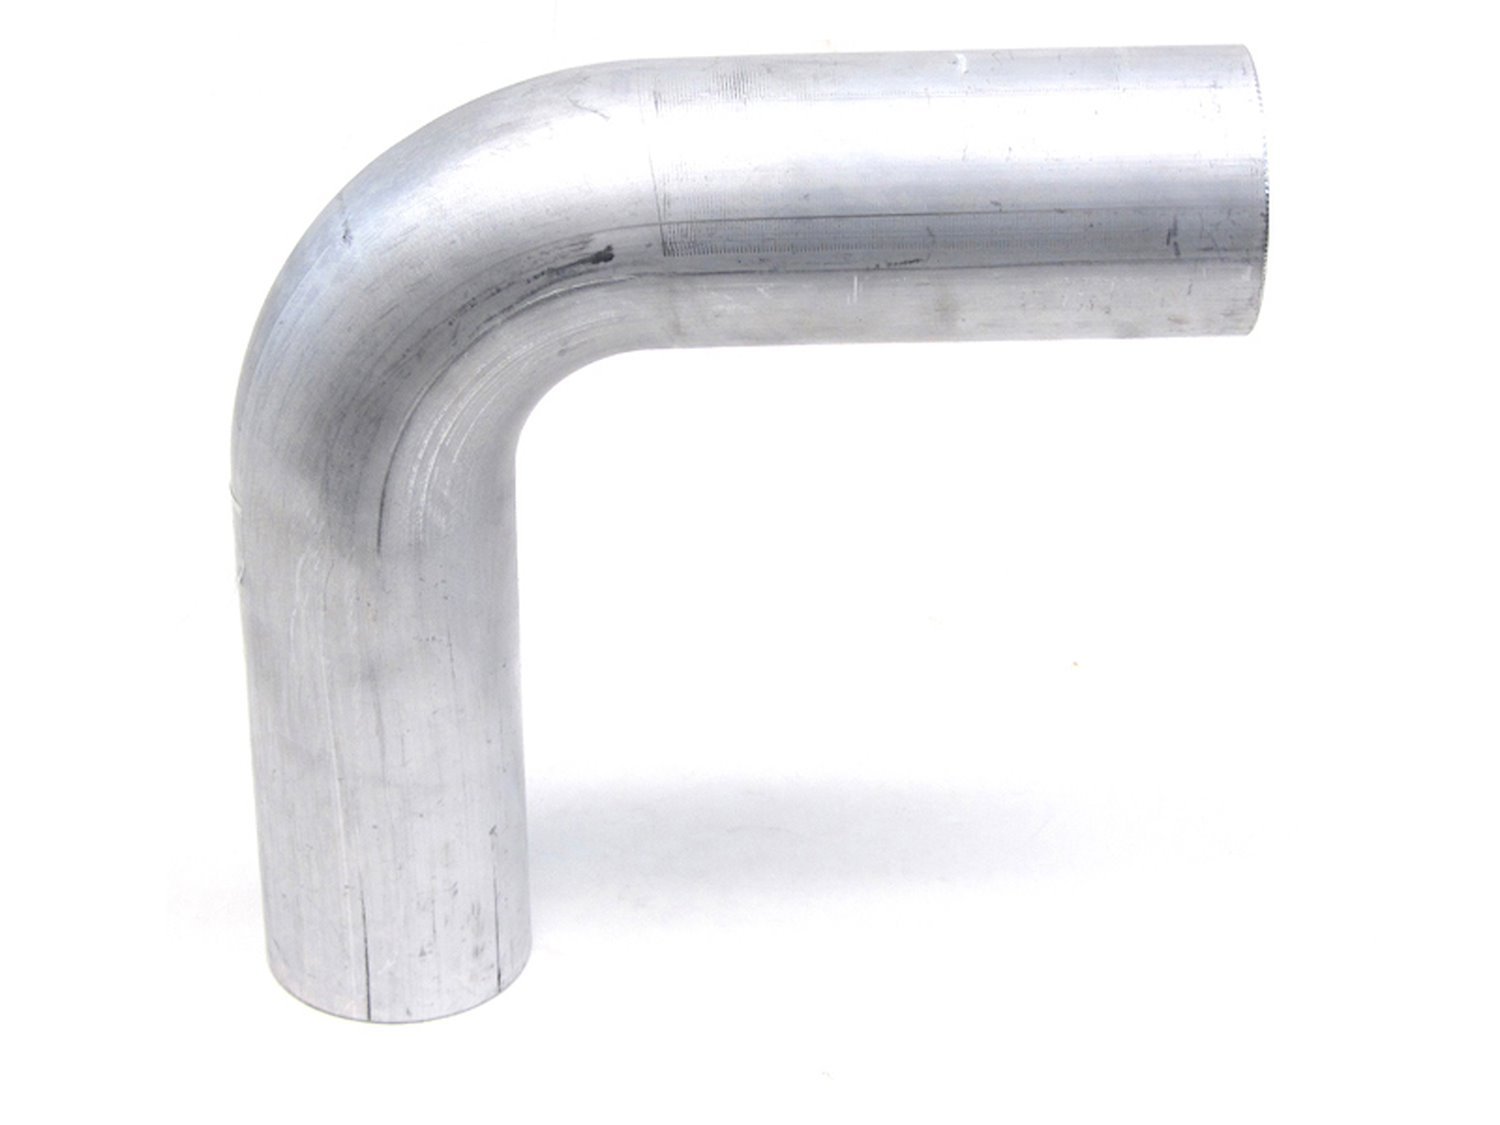 AT90-125-CLR-2 Aluminum Elbow Tube, 6061 Aluminum, 90-Degree Bend Elbow Tubing, 1-1/4 in. OD, Tight Radius, 2 in. CLR